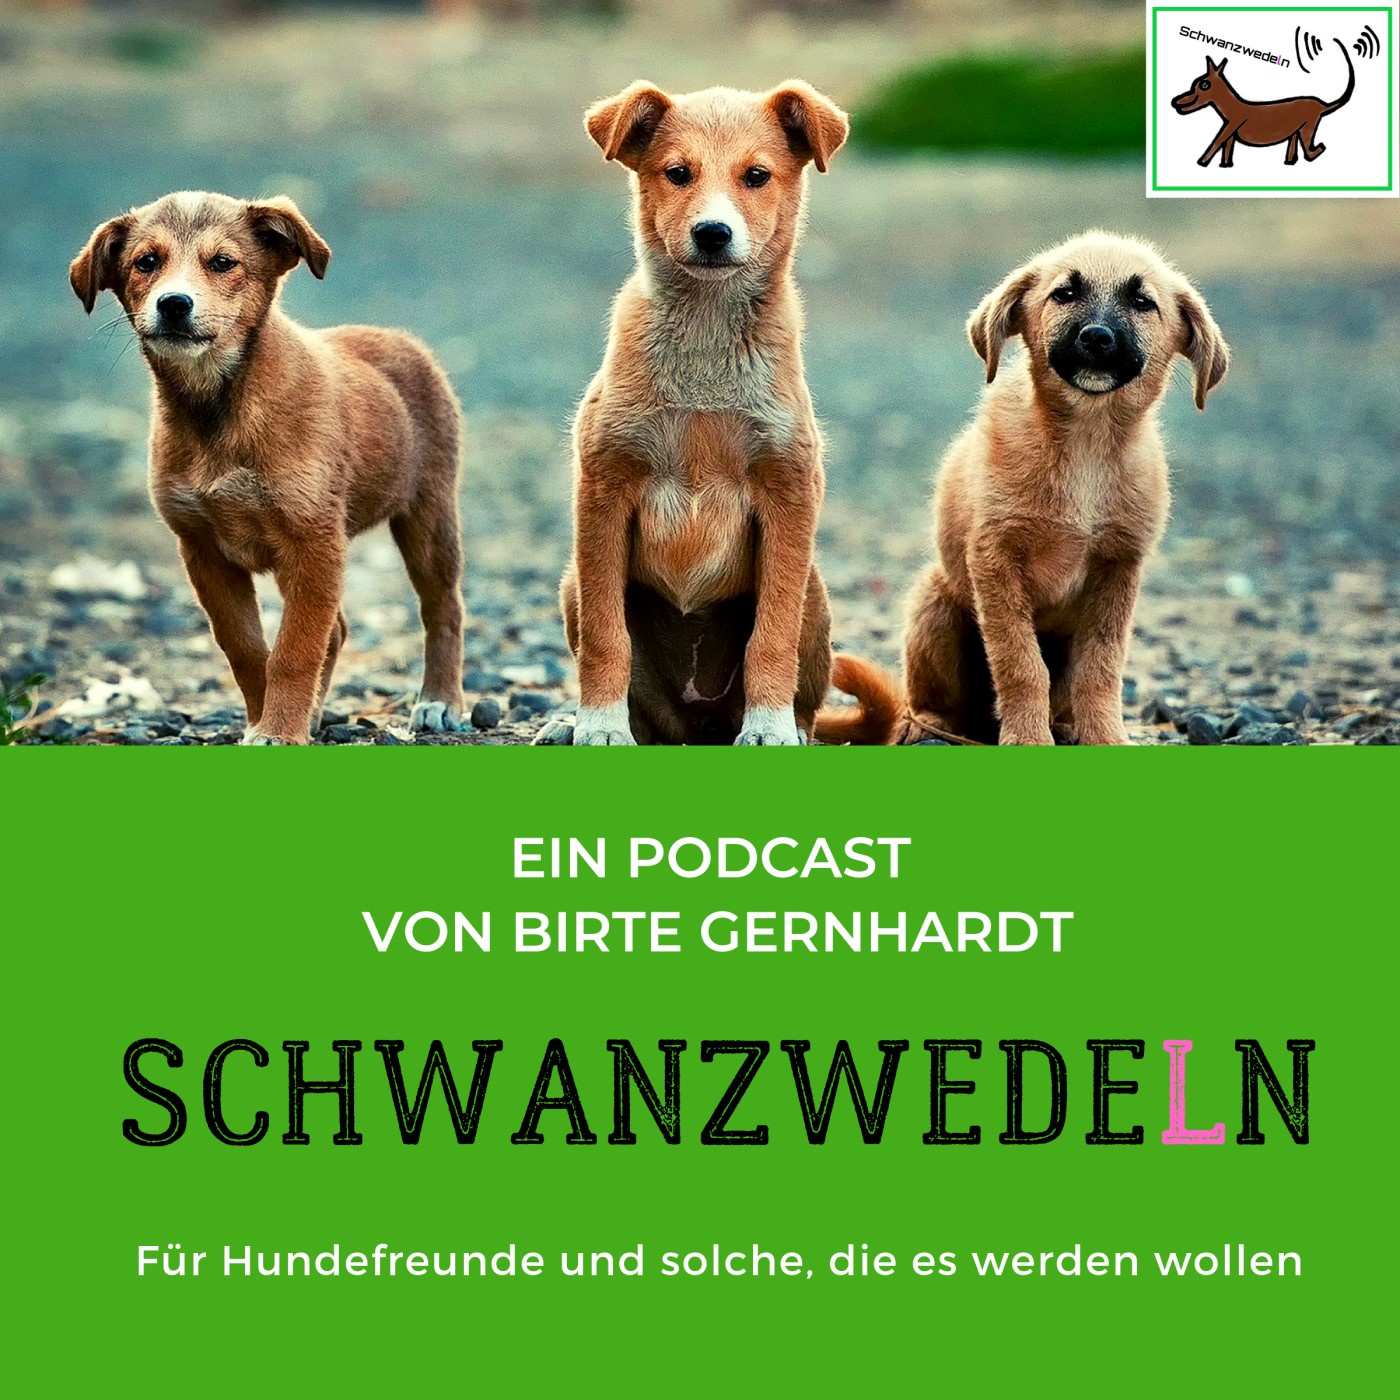 75 Deutscher Tierschutzbund e.V.